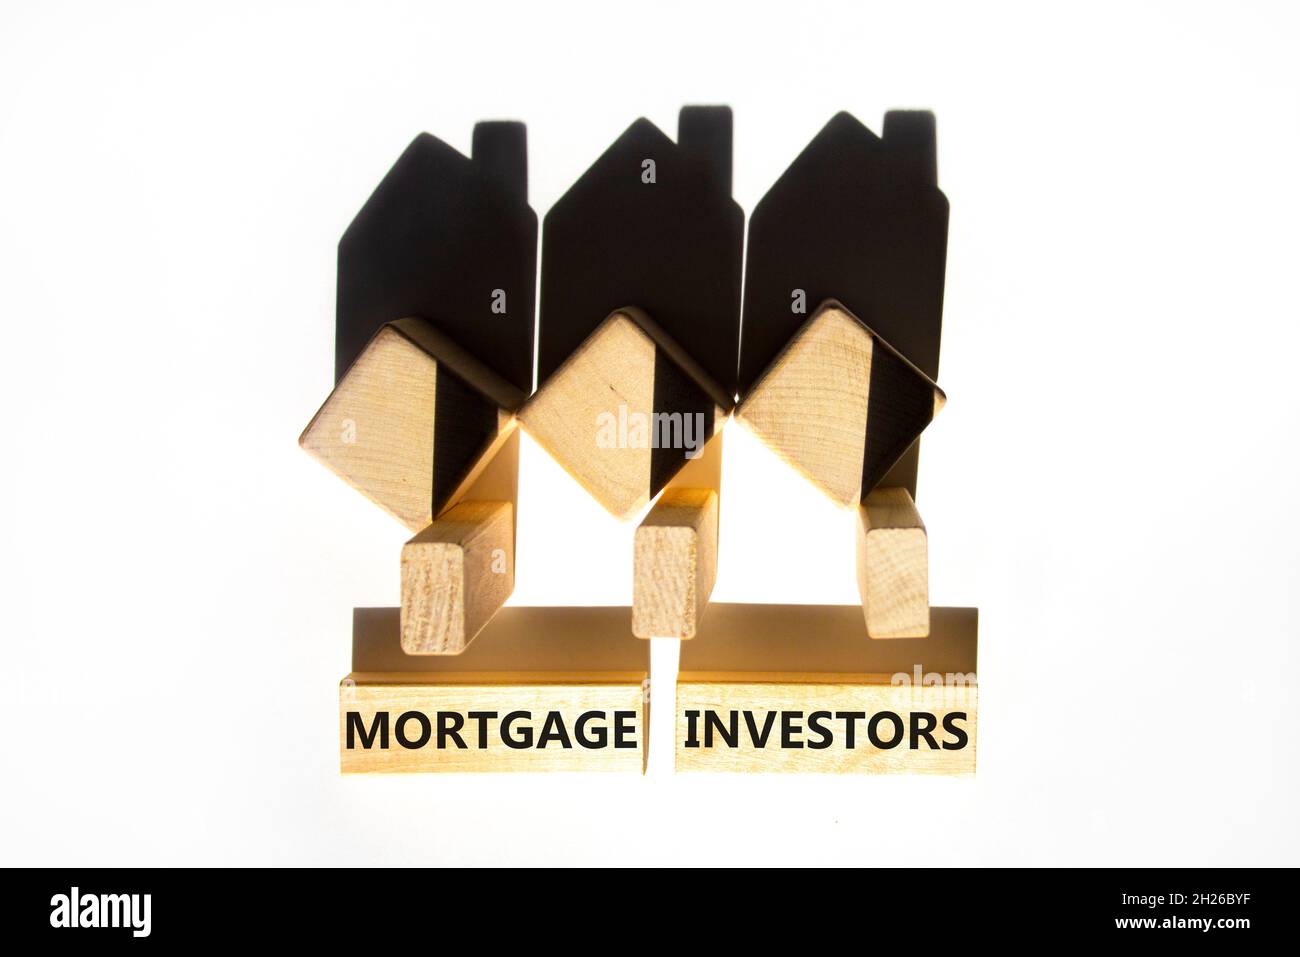 Symbole des investisseurs hypothécaires.Mots-clés 'Mortgage Investors' sur des blocs de bois près de la maison en bois miniature.Magnifique fond blanc.Affaires, mort Banque D'Images